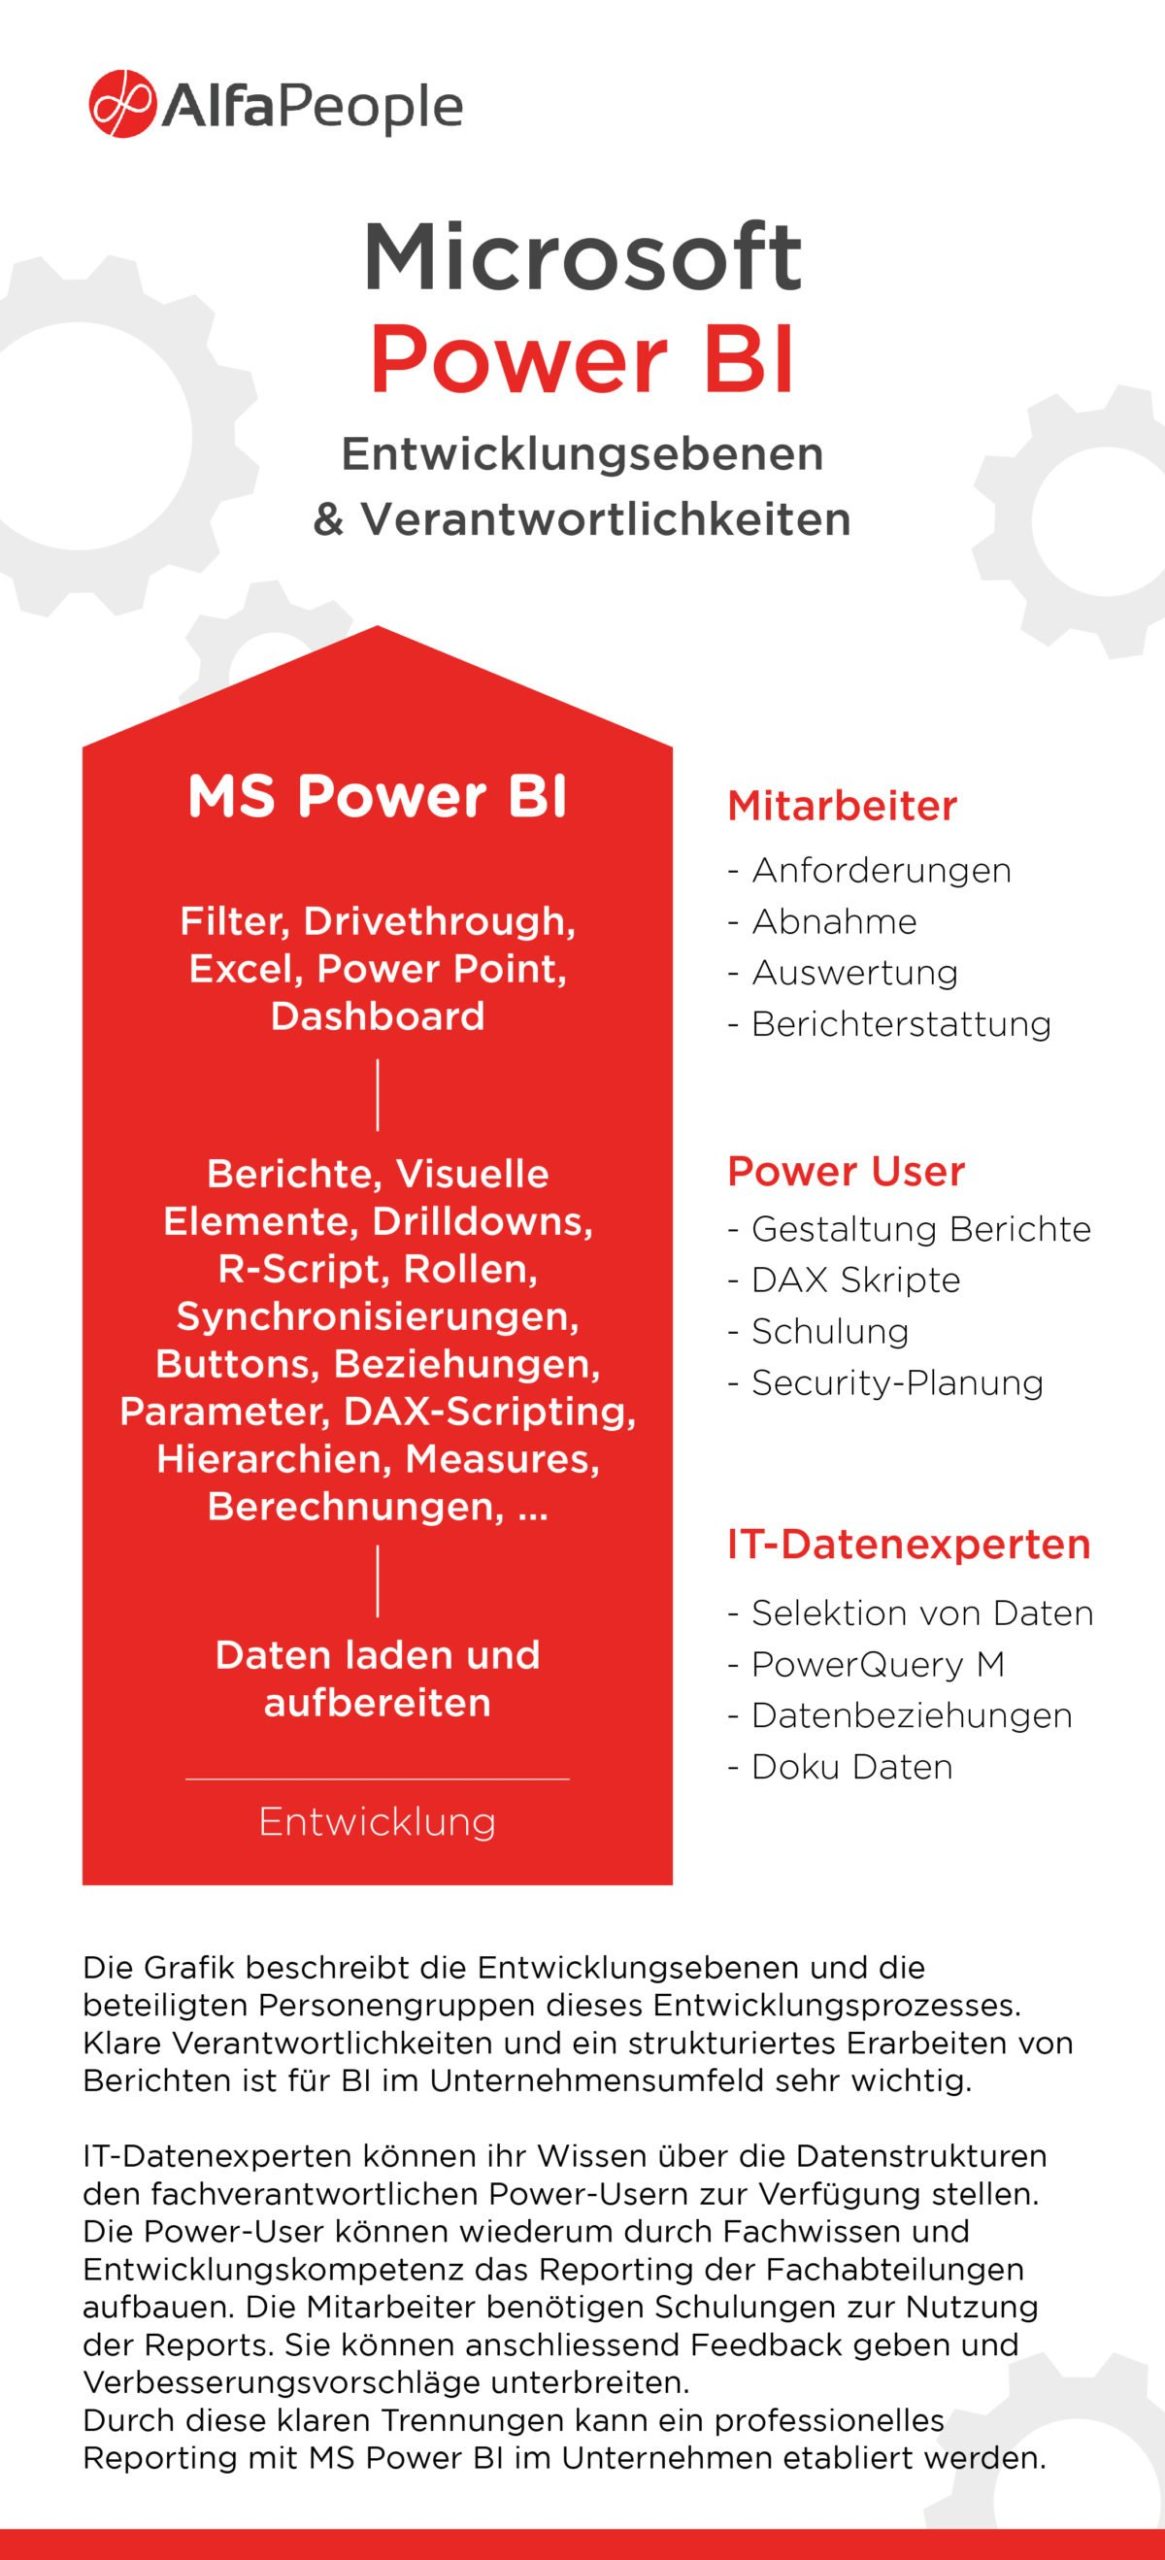 Infographic: Microsoft Power BI – Entwicklungsebenen & Verantwortlichkeiten